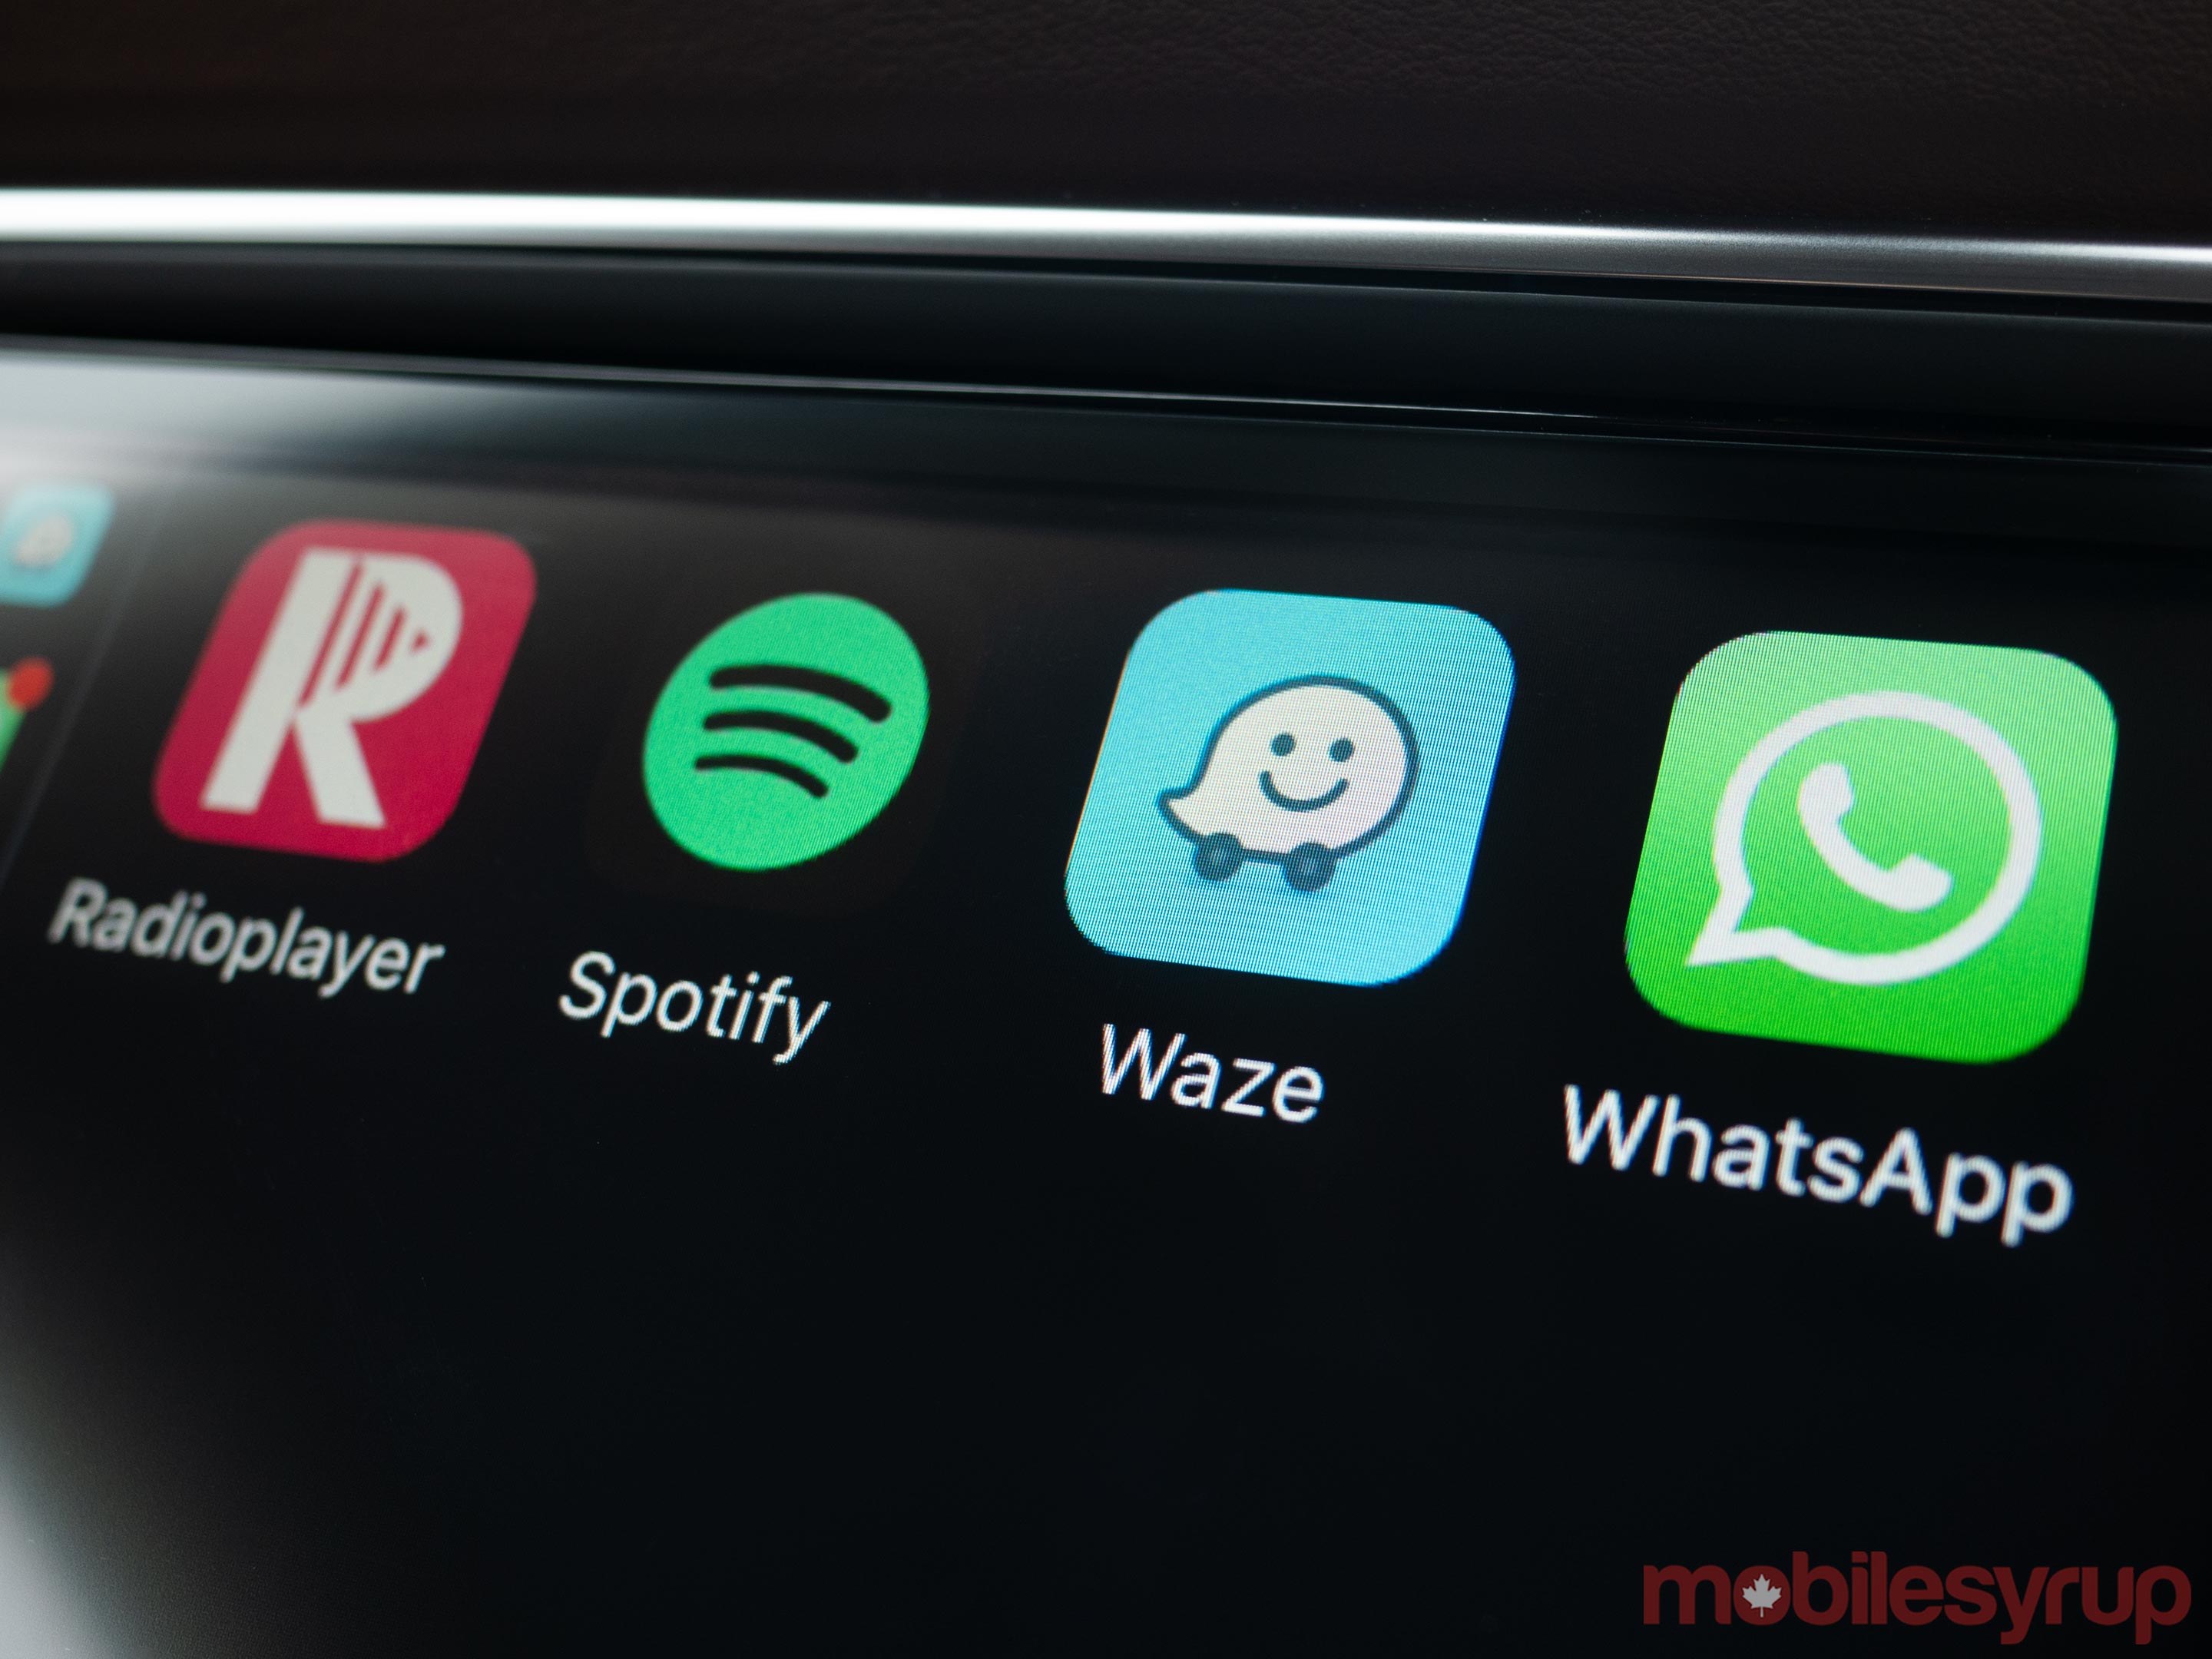 Waze CarPlay app icon